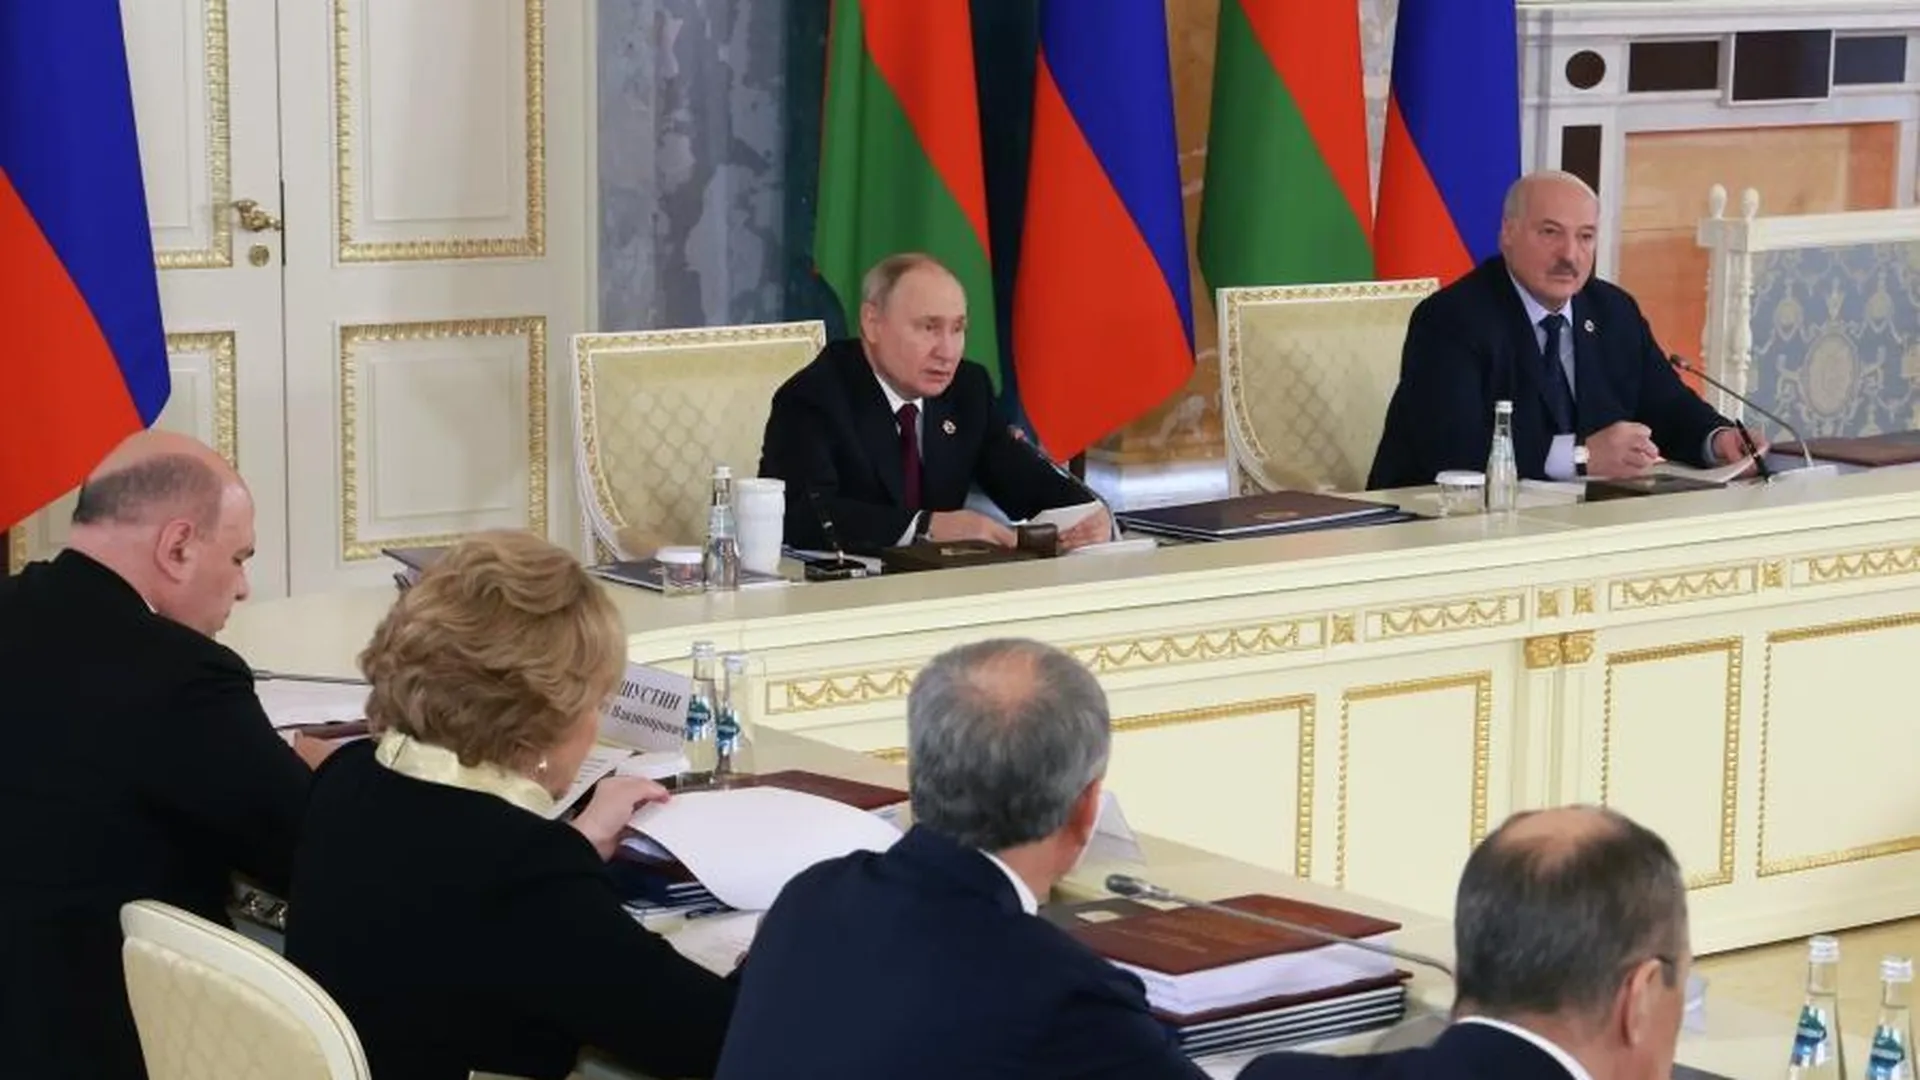 Путин и Лукашенко начали заседание Высшего госсовета Союзного государства